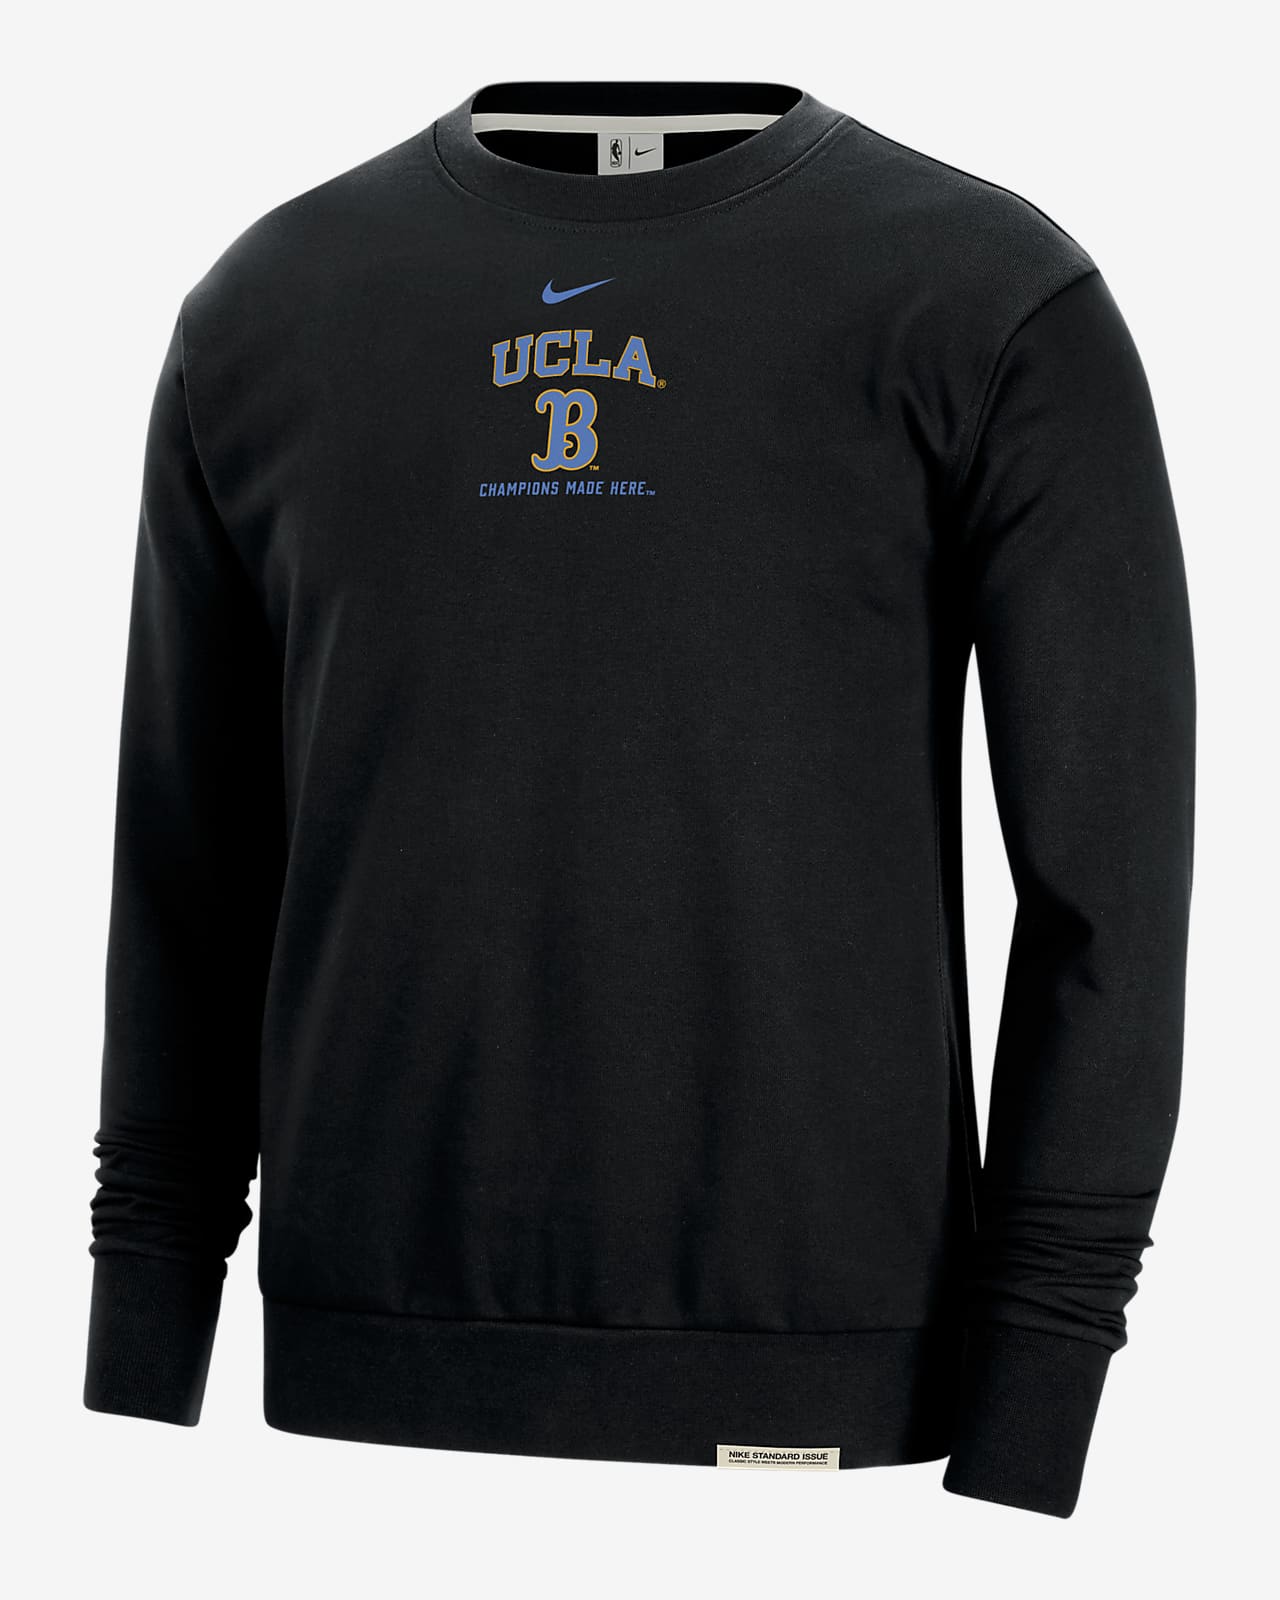 UCLA Standard Issue Men's Nike College Fleece Crew-Neck Sweatshirt